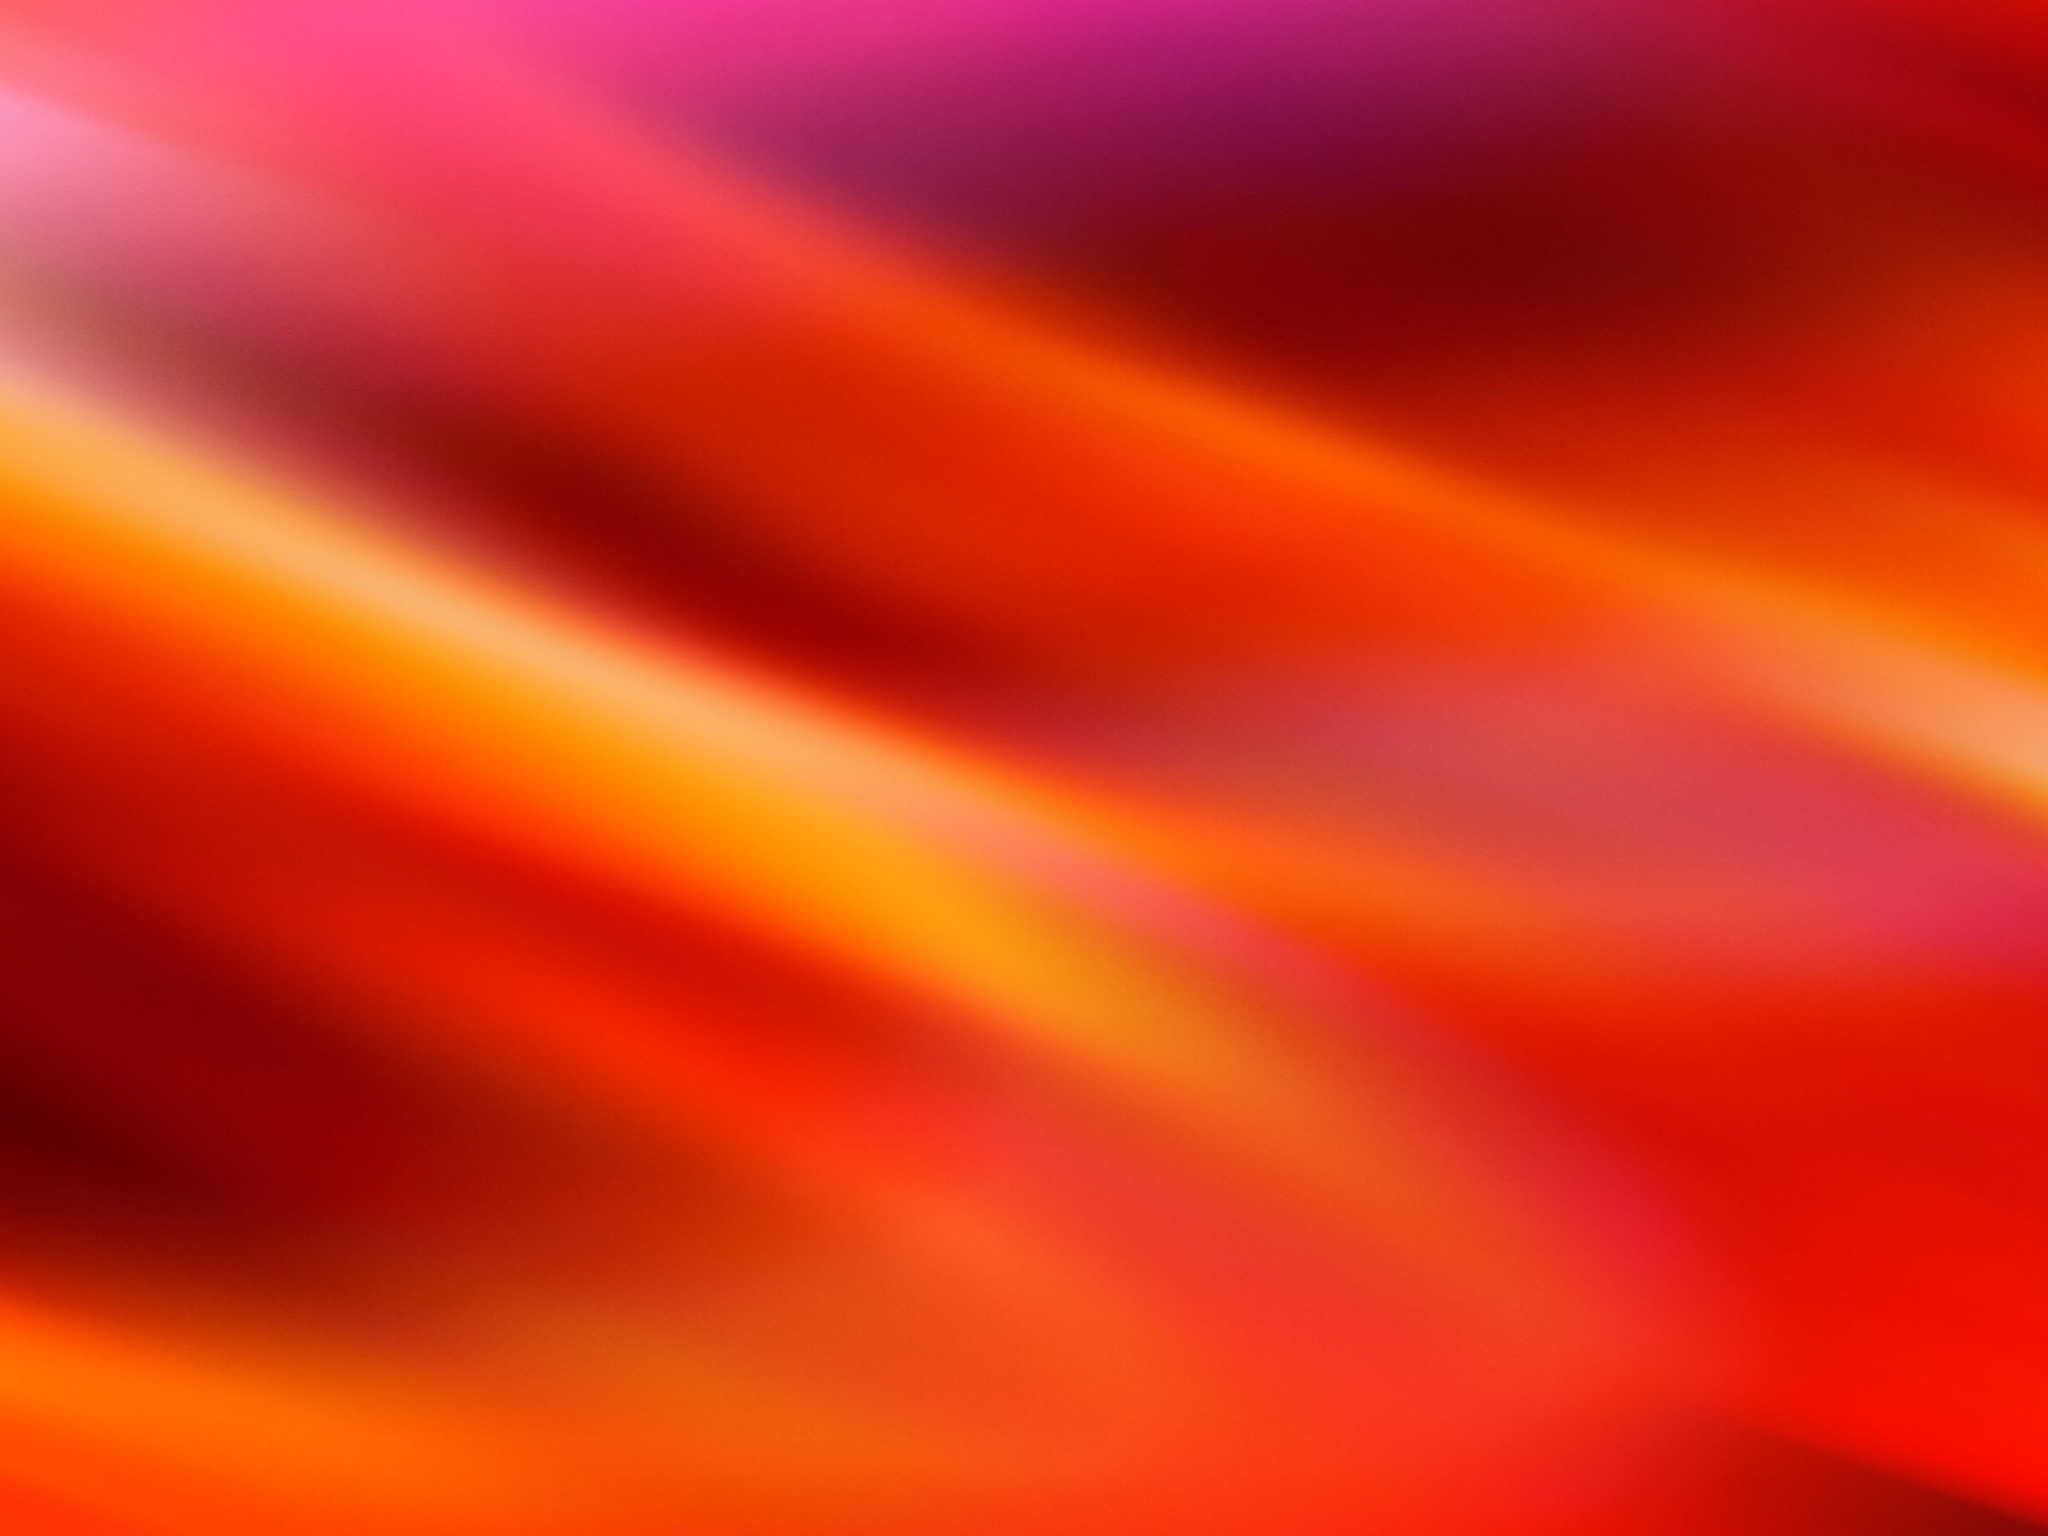 Red Abstract HD Wallpaper - WallpaperSafari